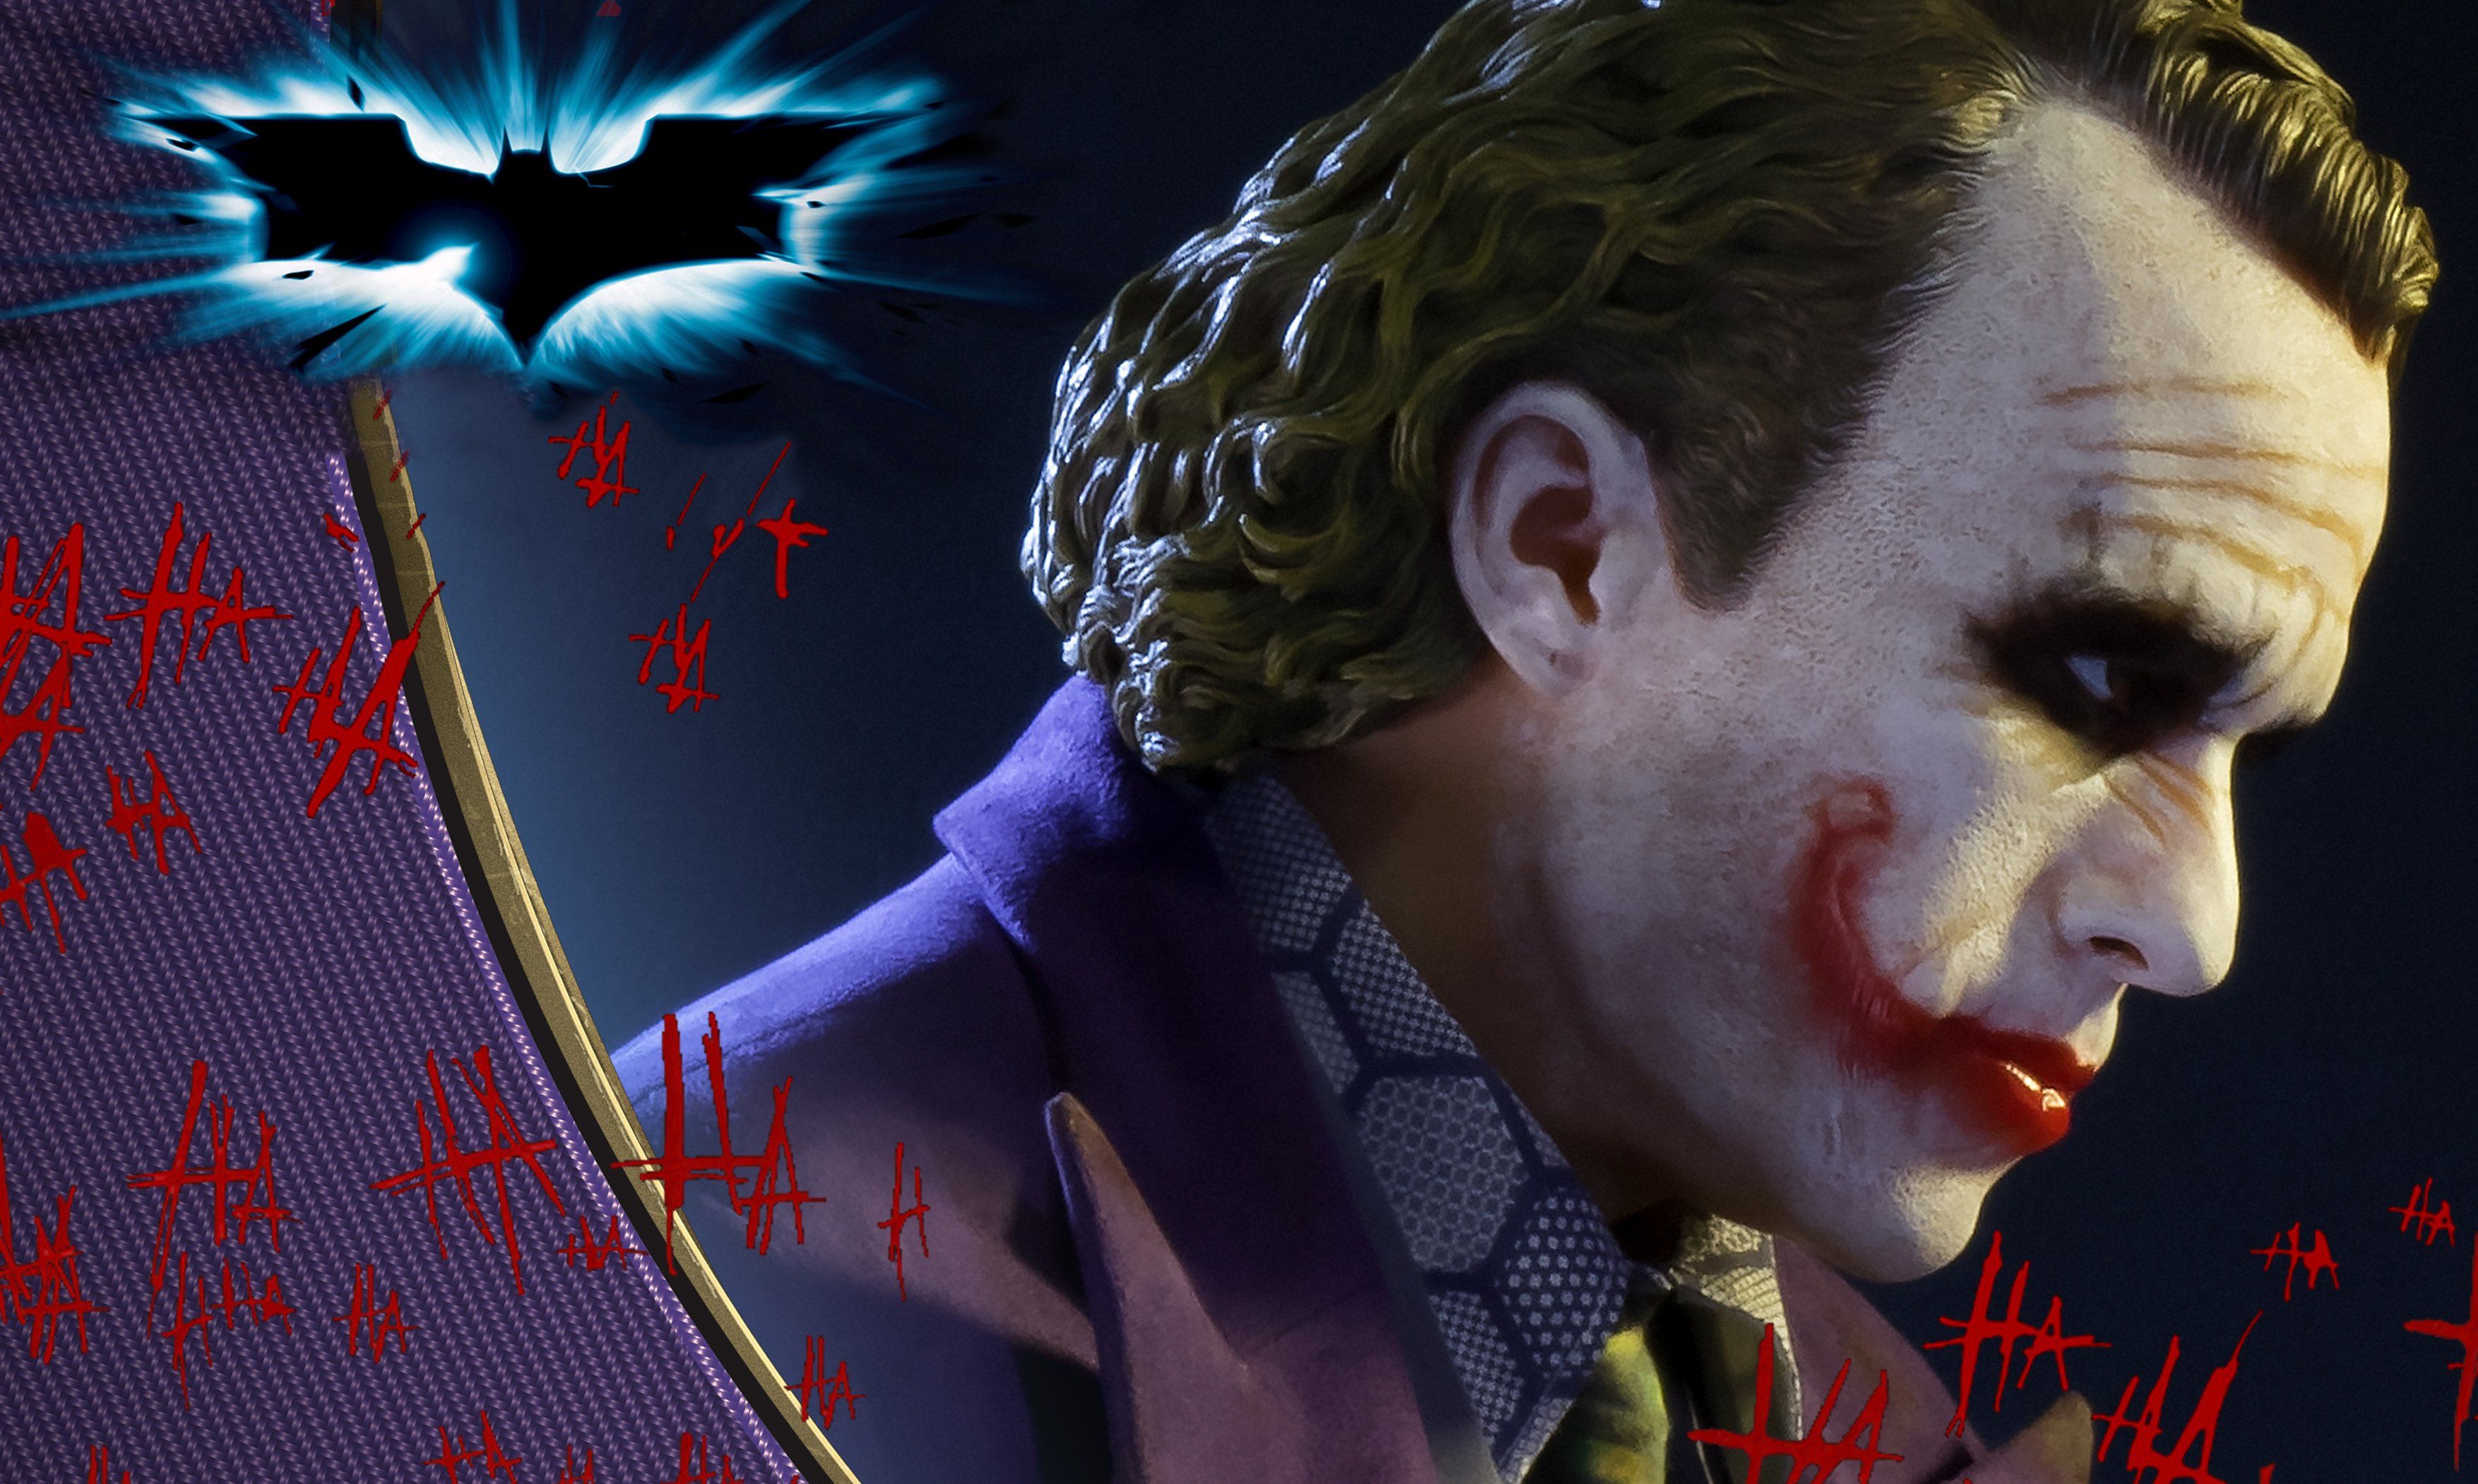 Dark Knight Joker Wallpaper